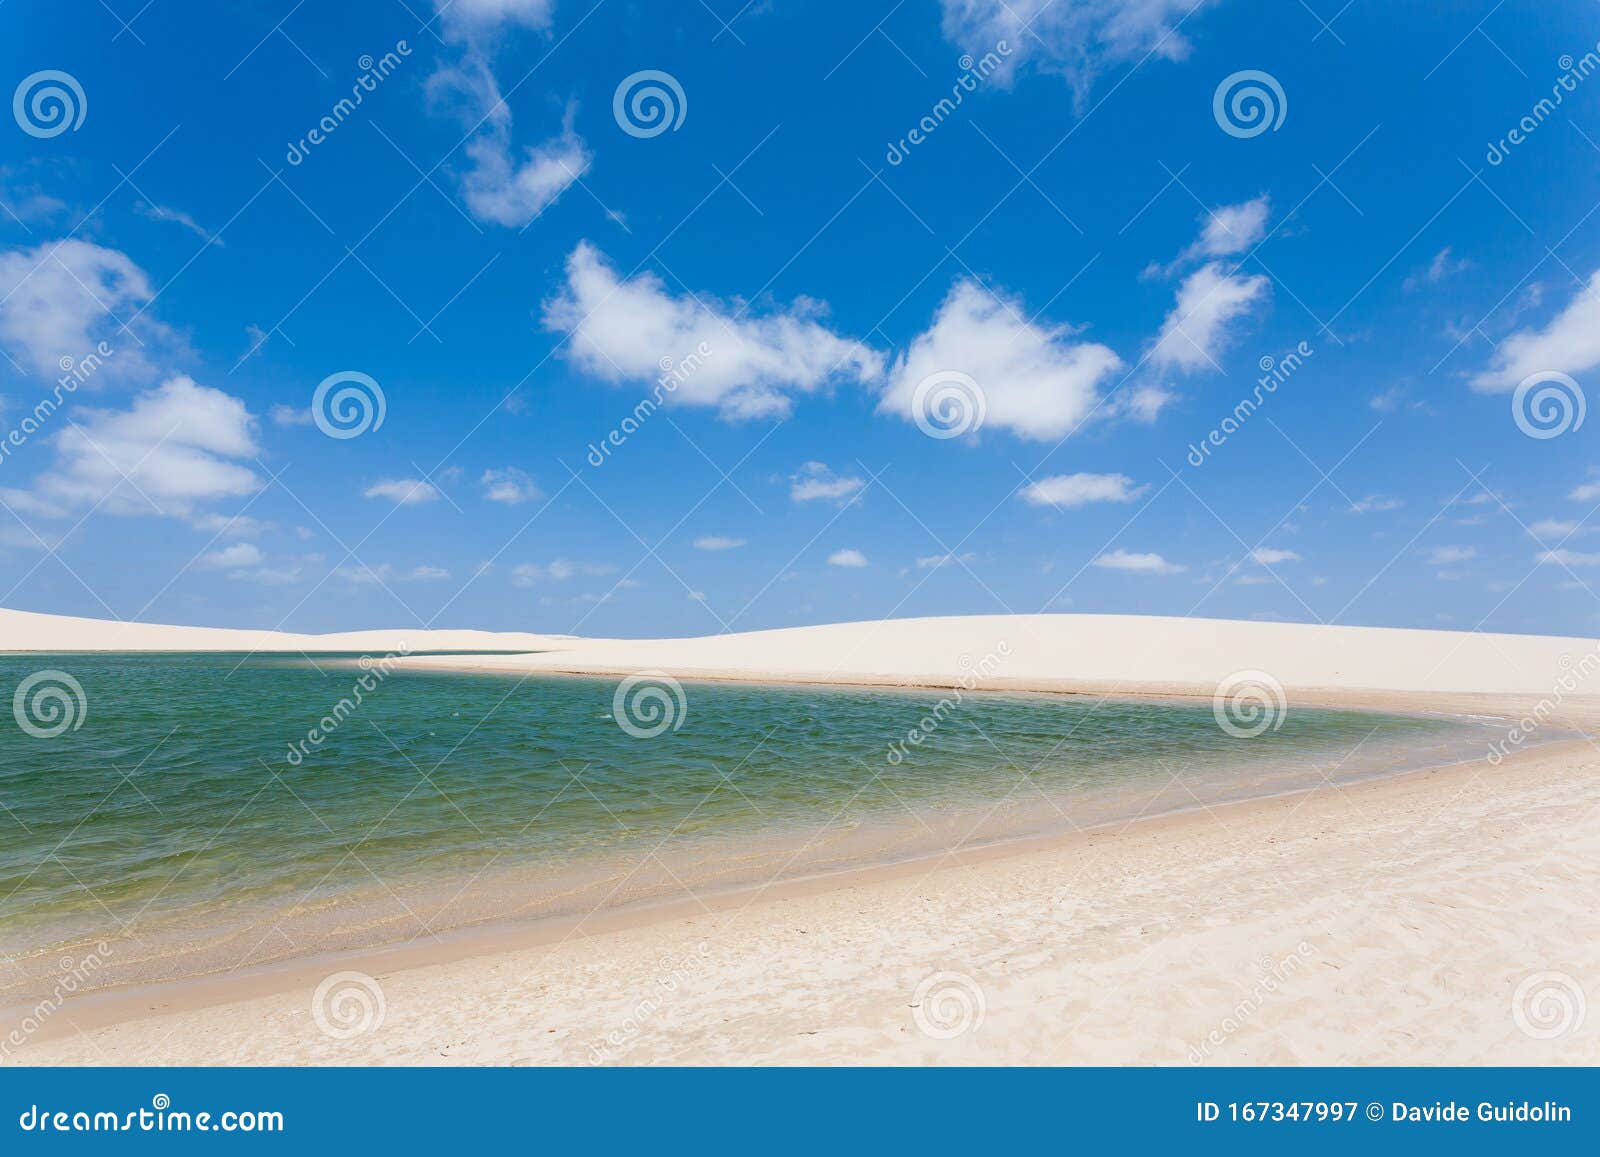 white sand dunes panorama from lencois maranhenses national park, brazil